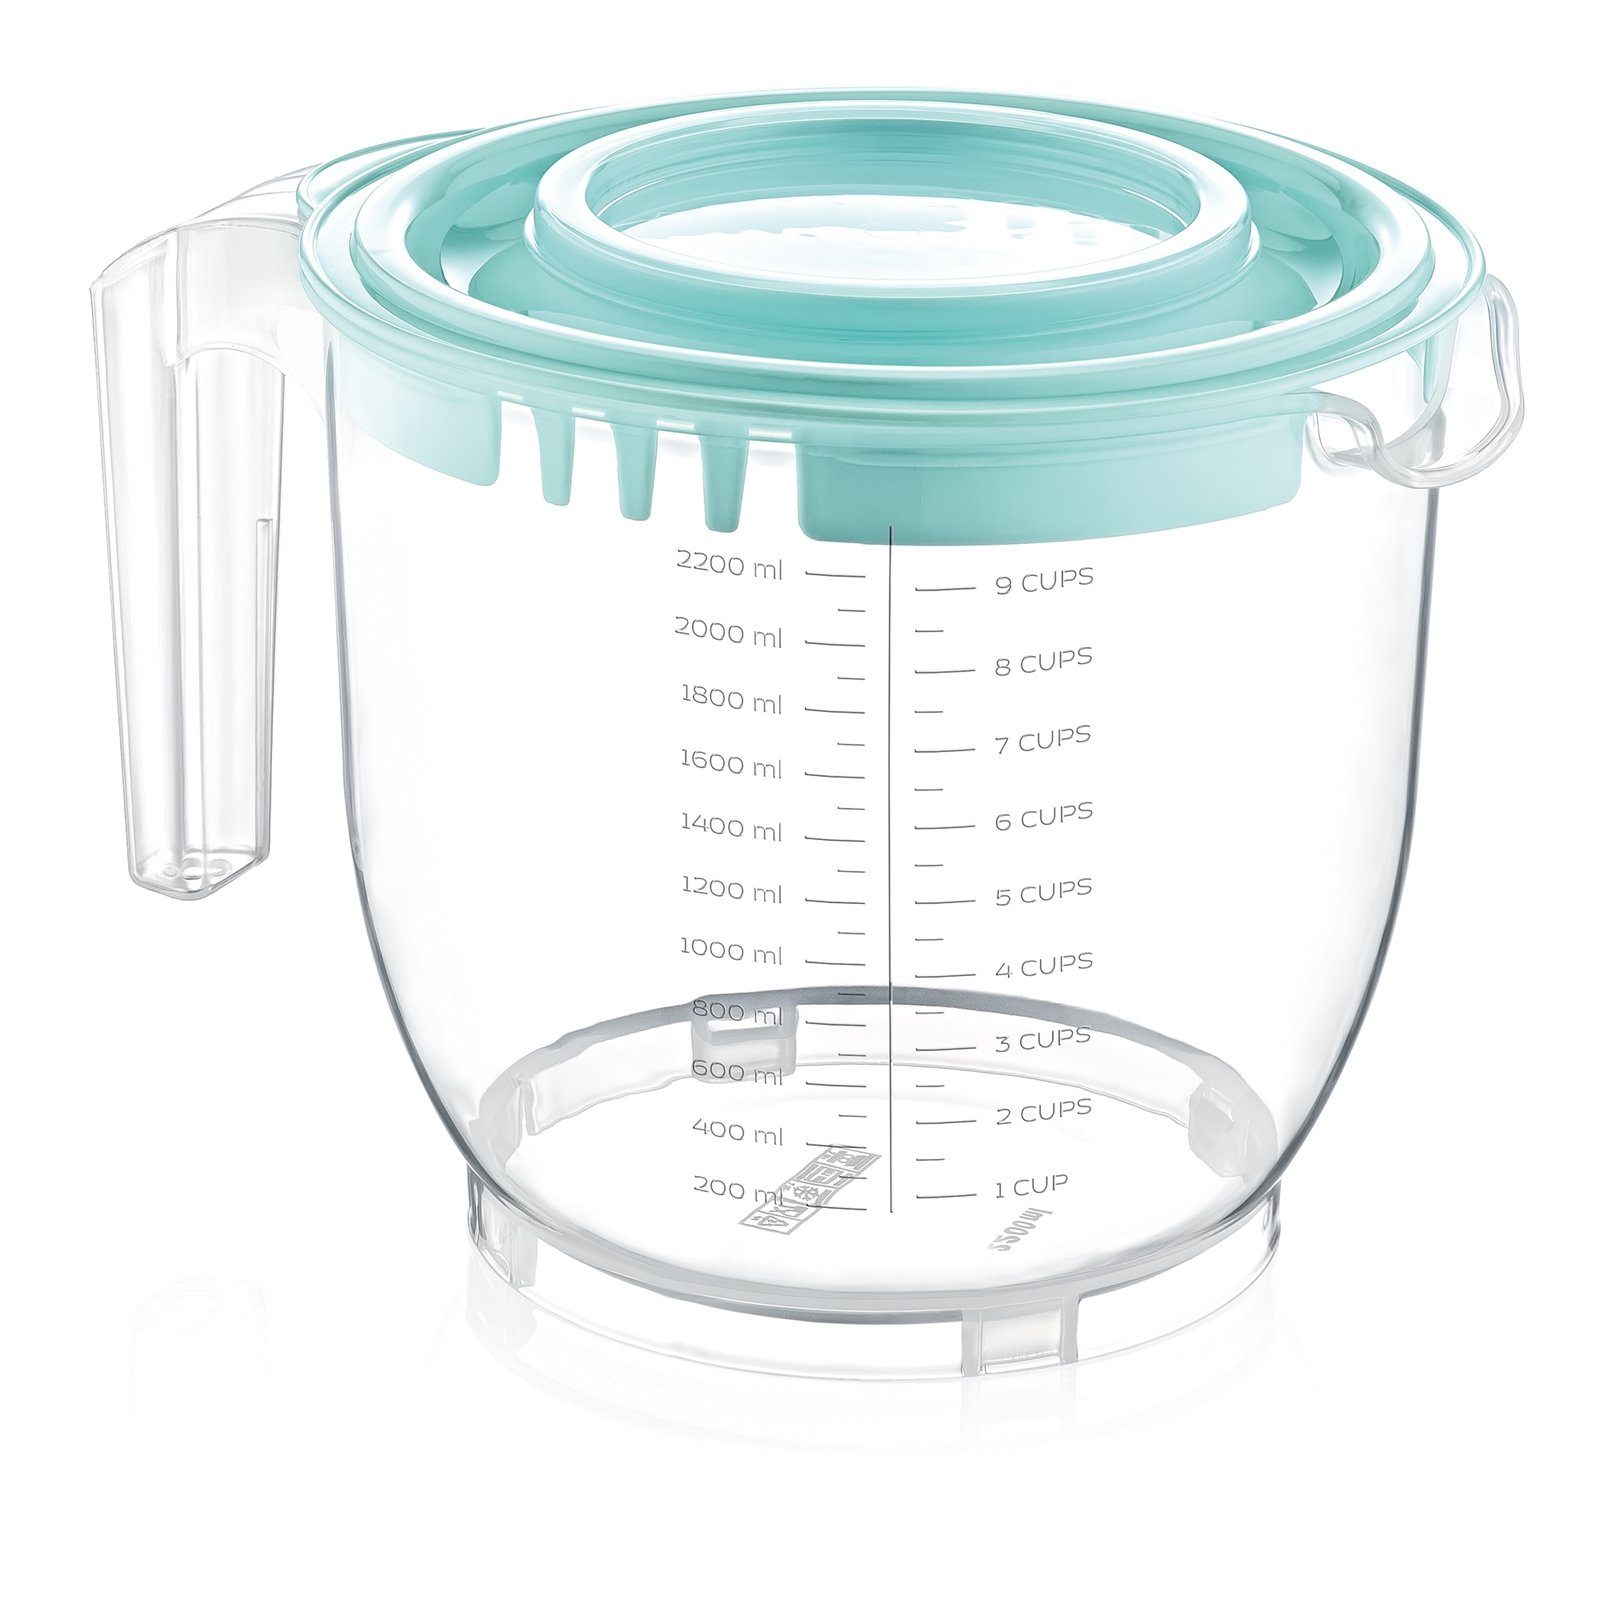 Messbecher mit Deckel Glas Mehrzweck-Milchbecher für zu Hause